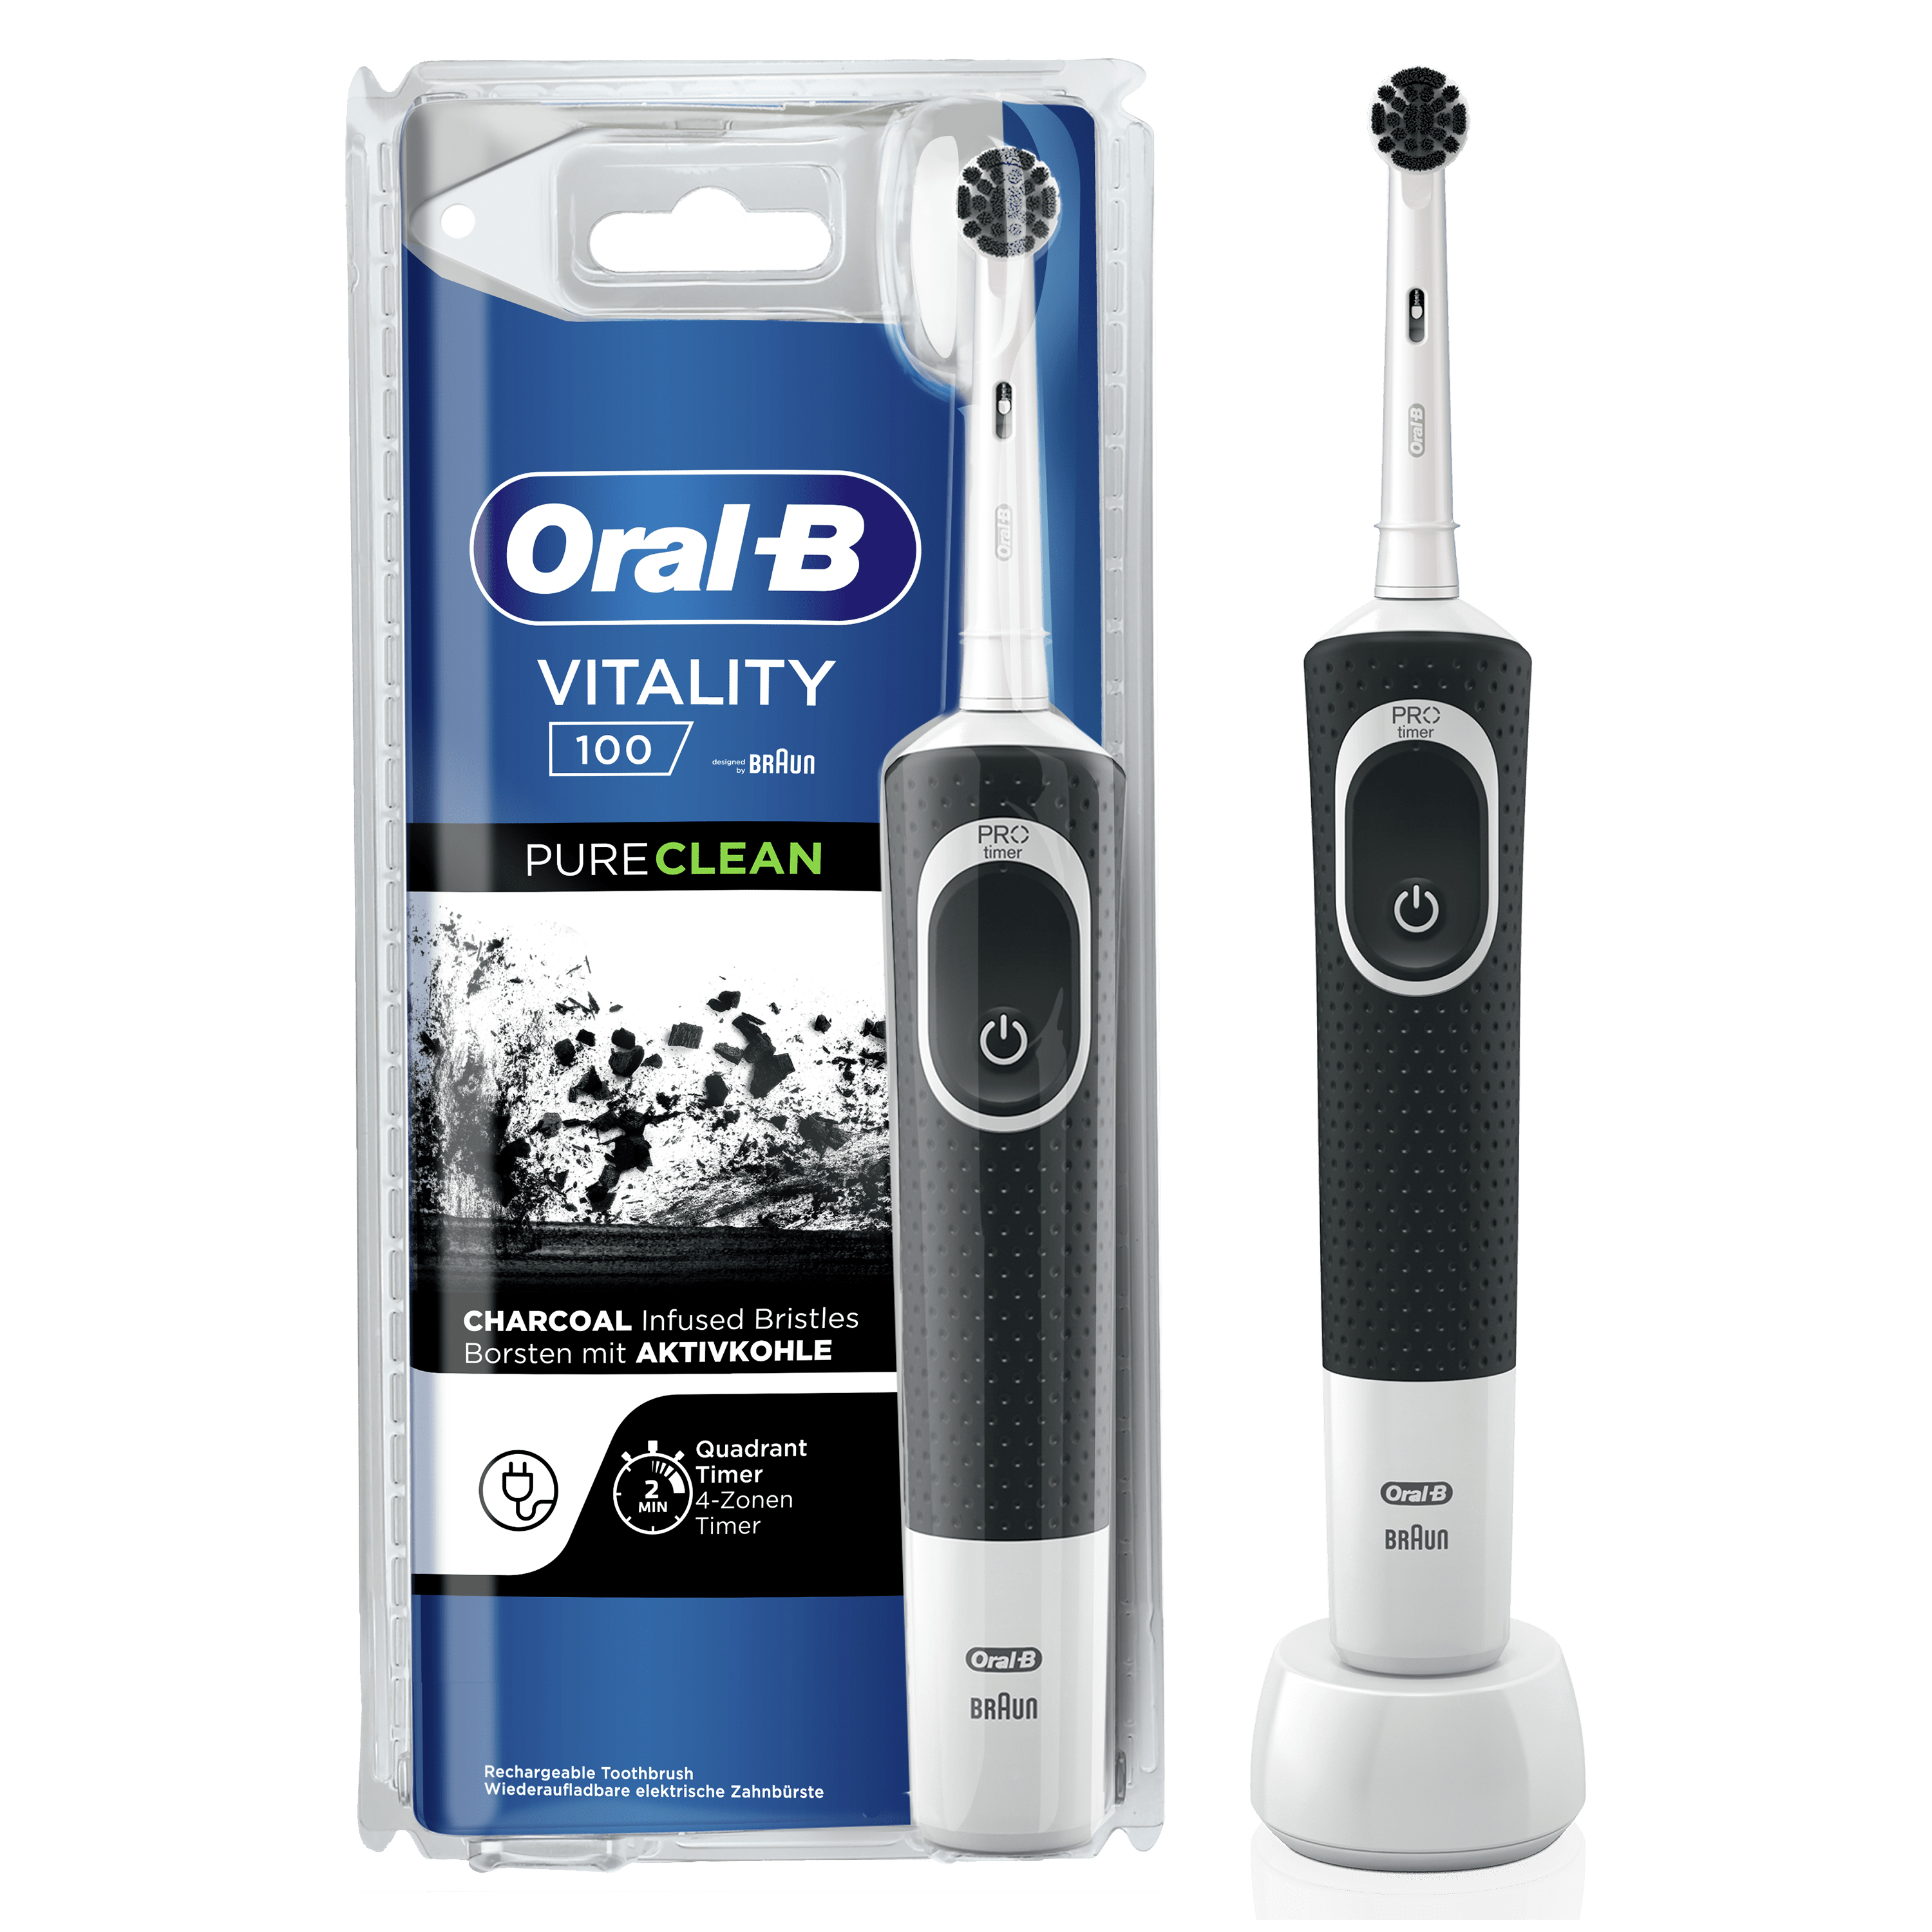 Oral-B Oral-B Vitality - 100 - Pure Clean Elektrische Tandenborstel Ontworpen door Braun